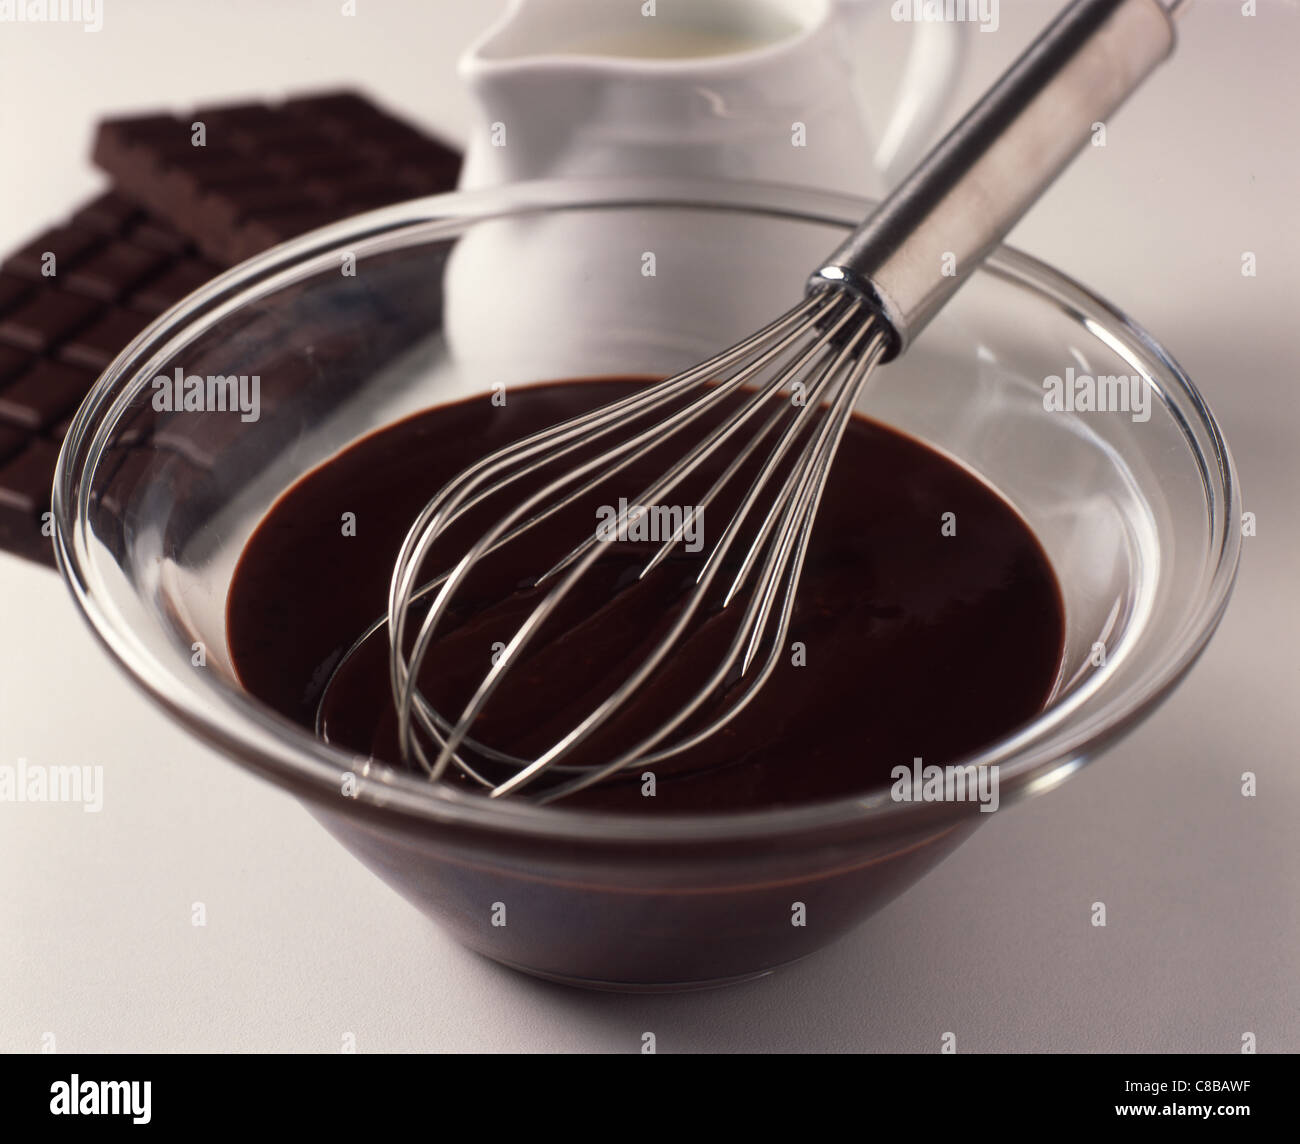 preparing chocolate Stock Photo